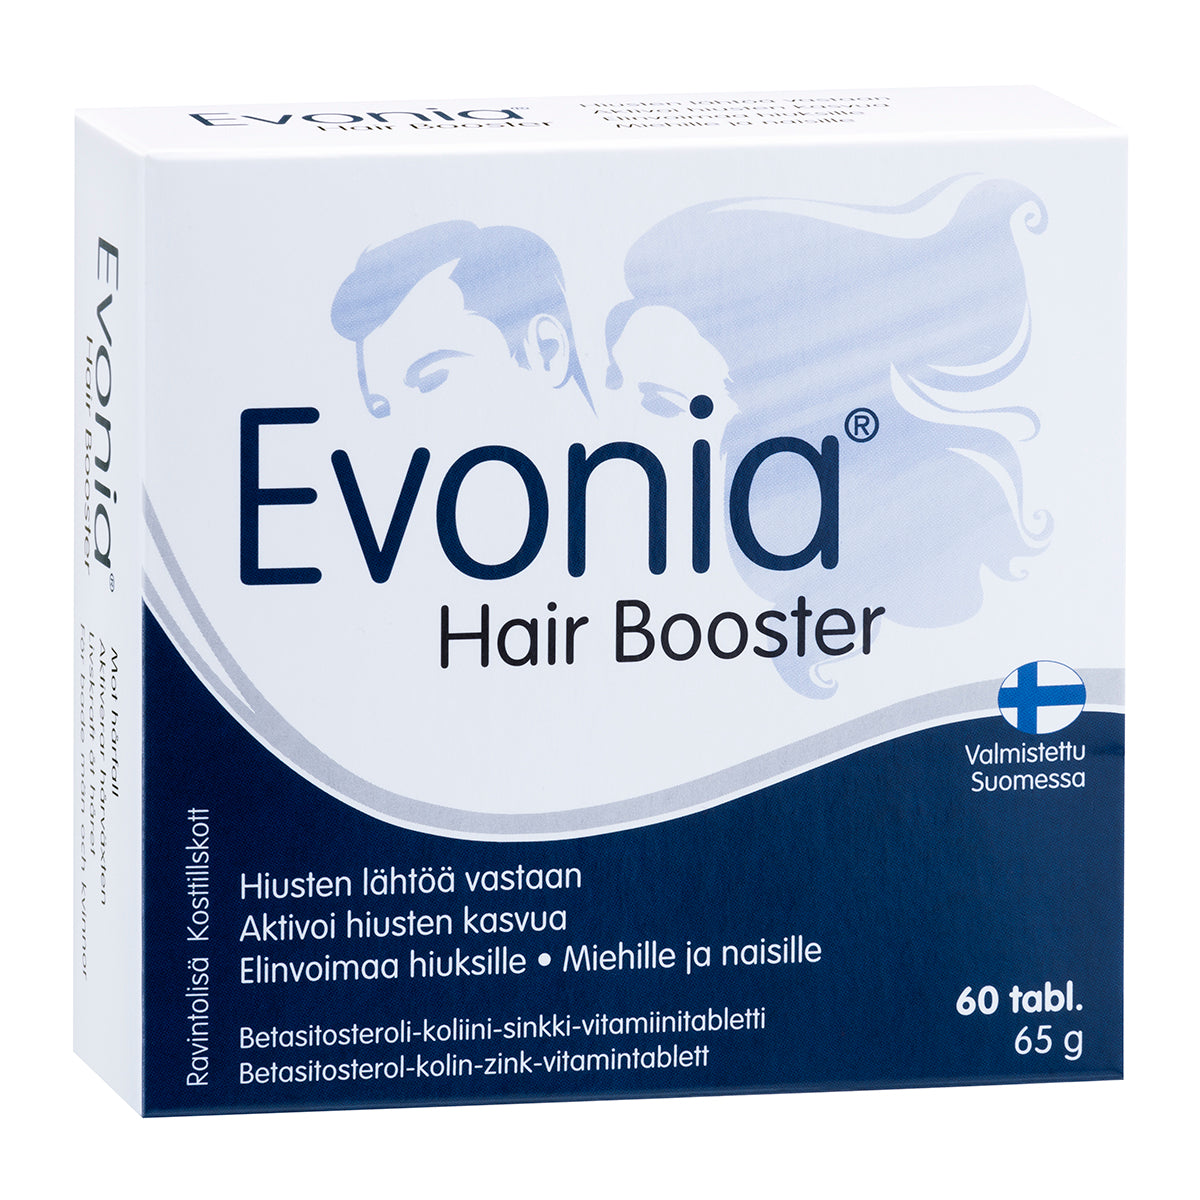 Evonia Hair Booster-Hankintatukku-Hyvinvoinnin Tavaratalo